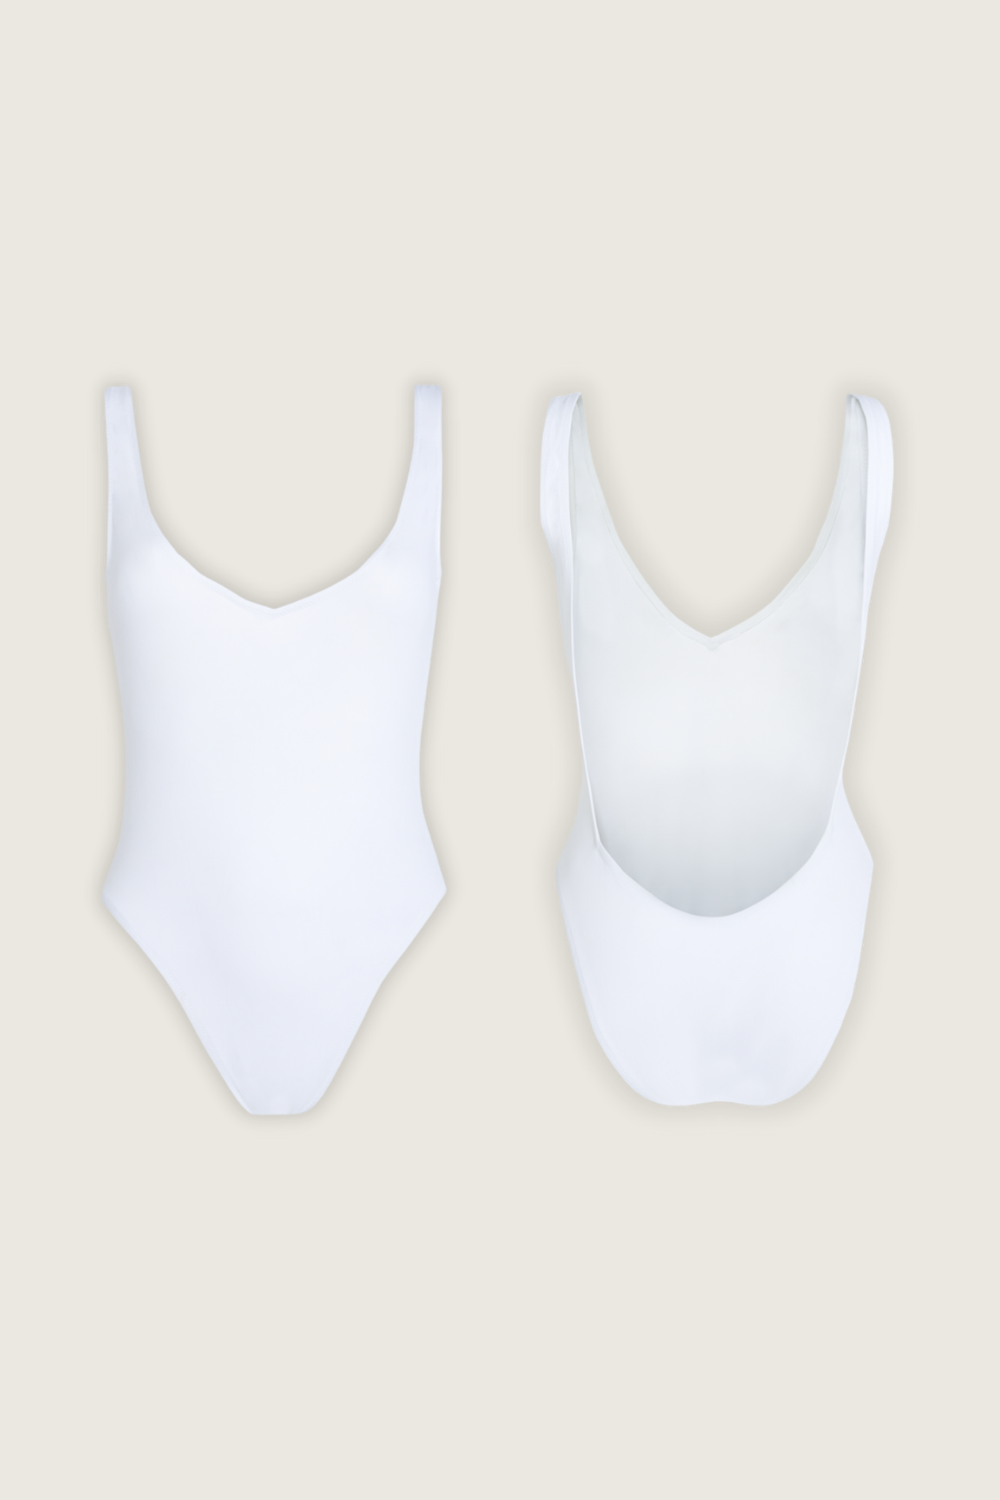 Isometric Swimsuit